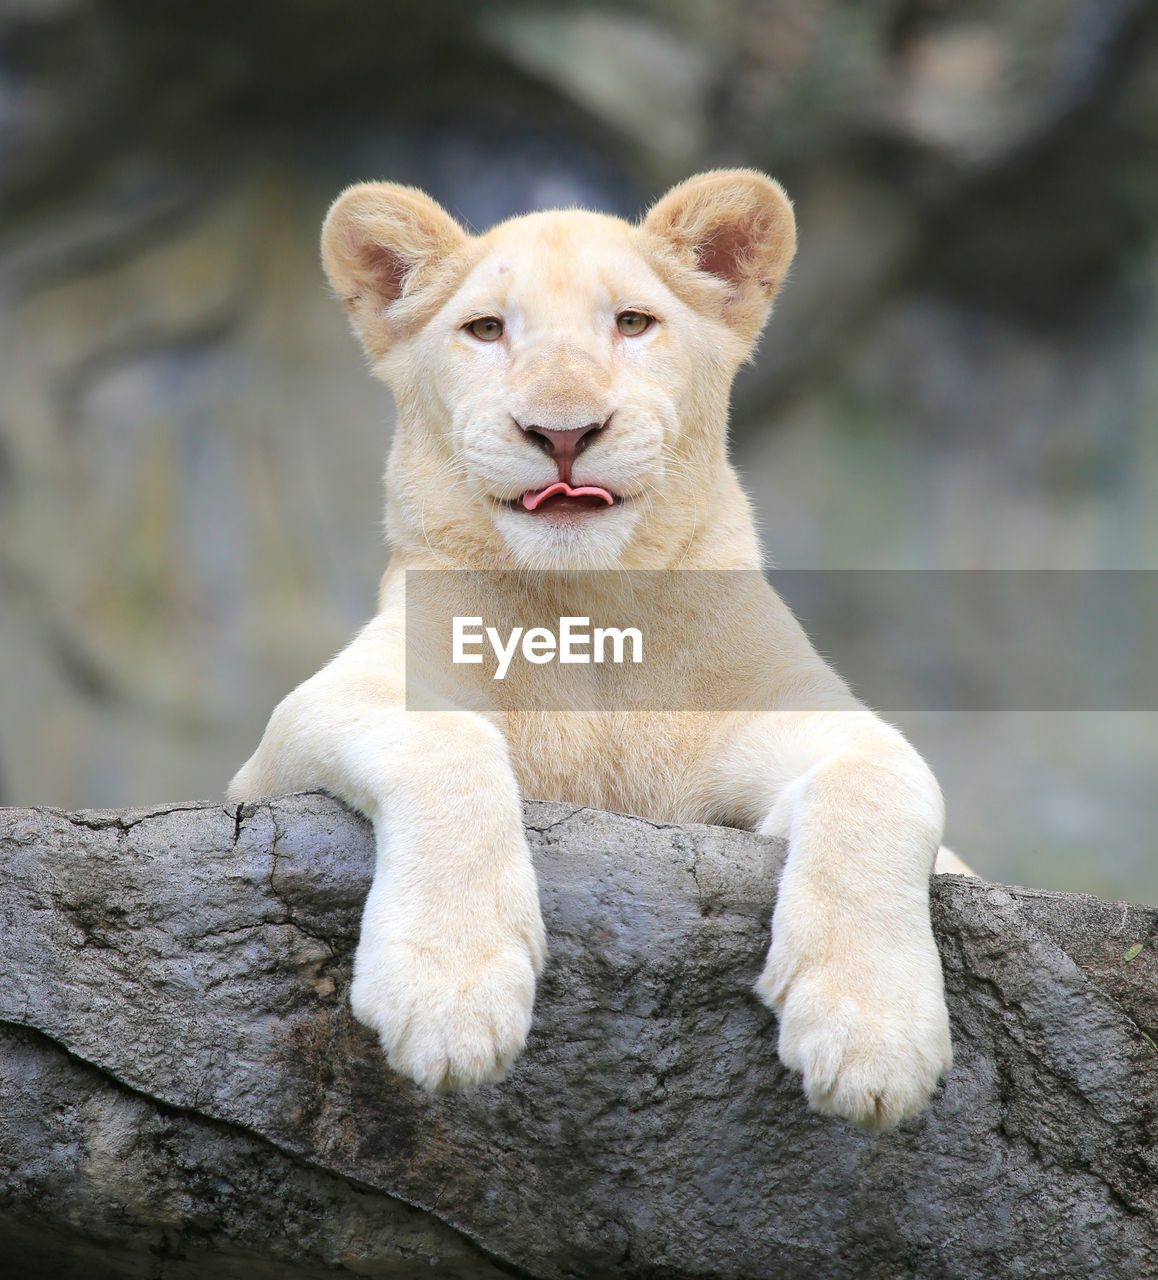 Close-up portrait of lion cub on wood